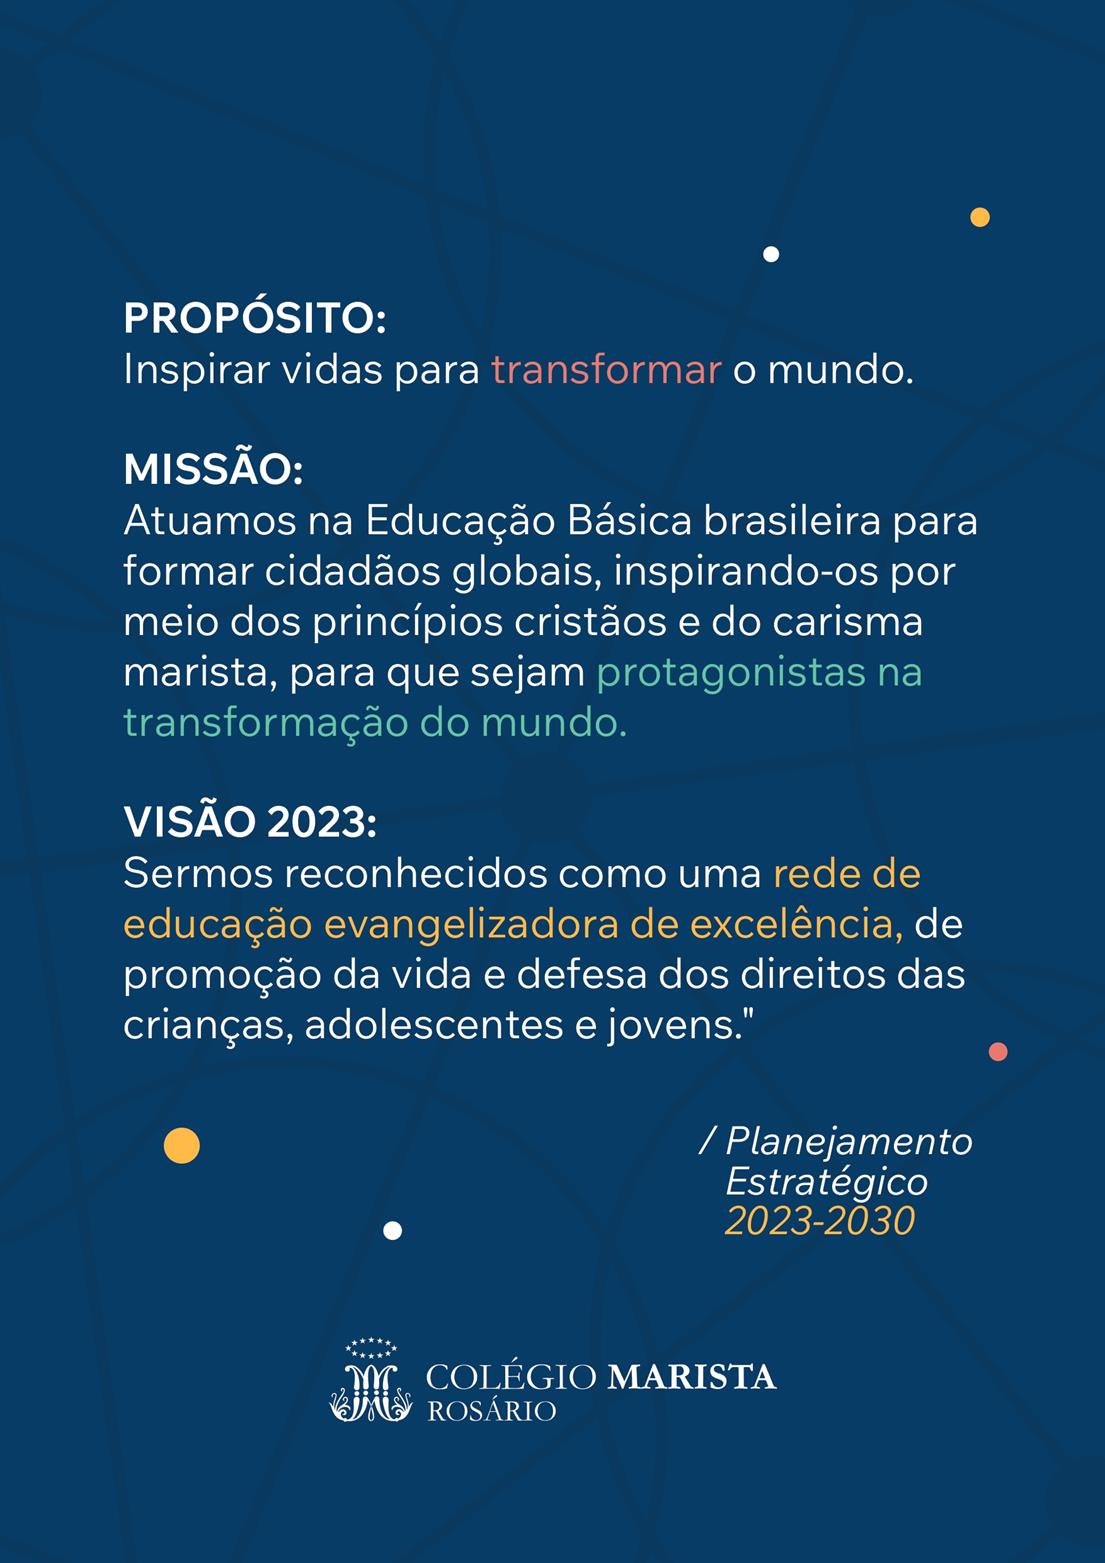 2416_Rosário_Materiais visuais - Planejamento Estratégico_Artes em A3 (2)_page-0001.jpg